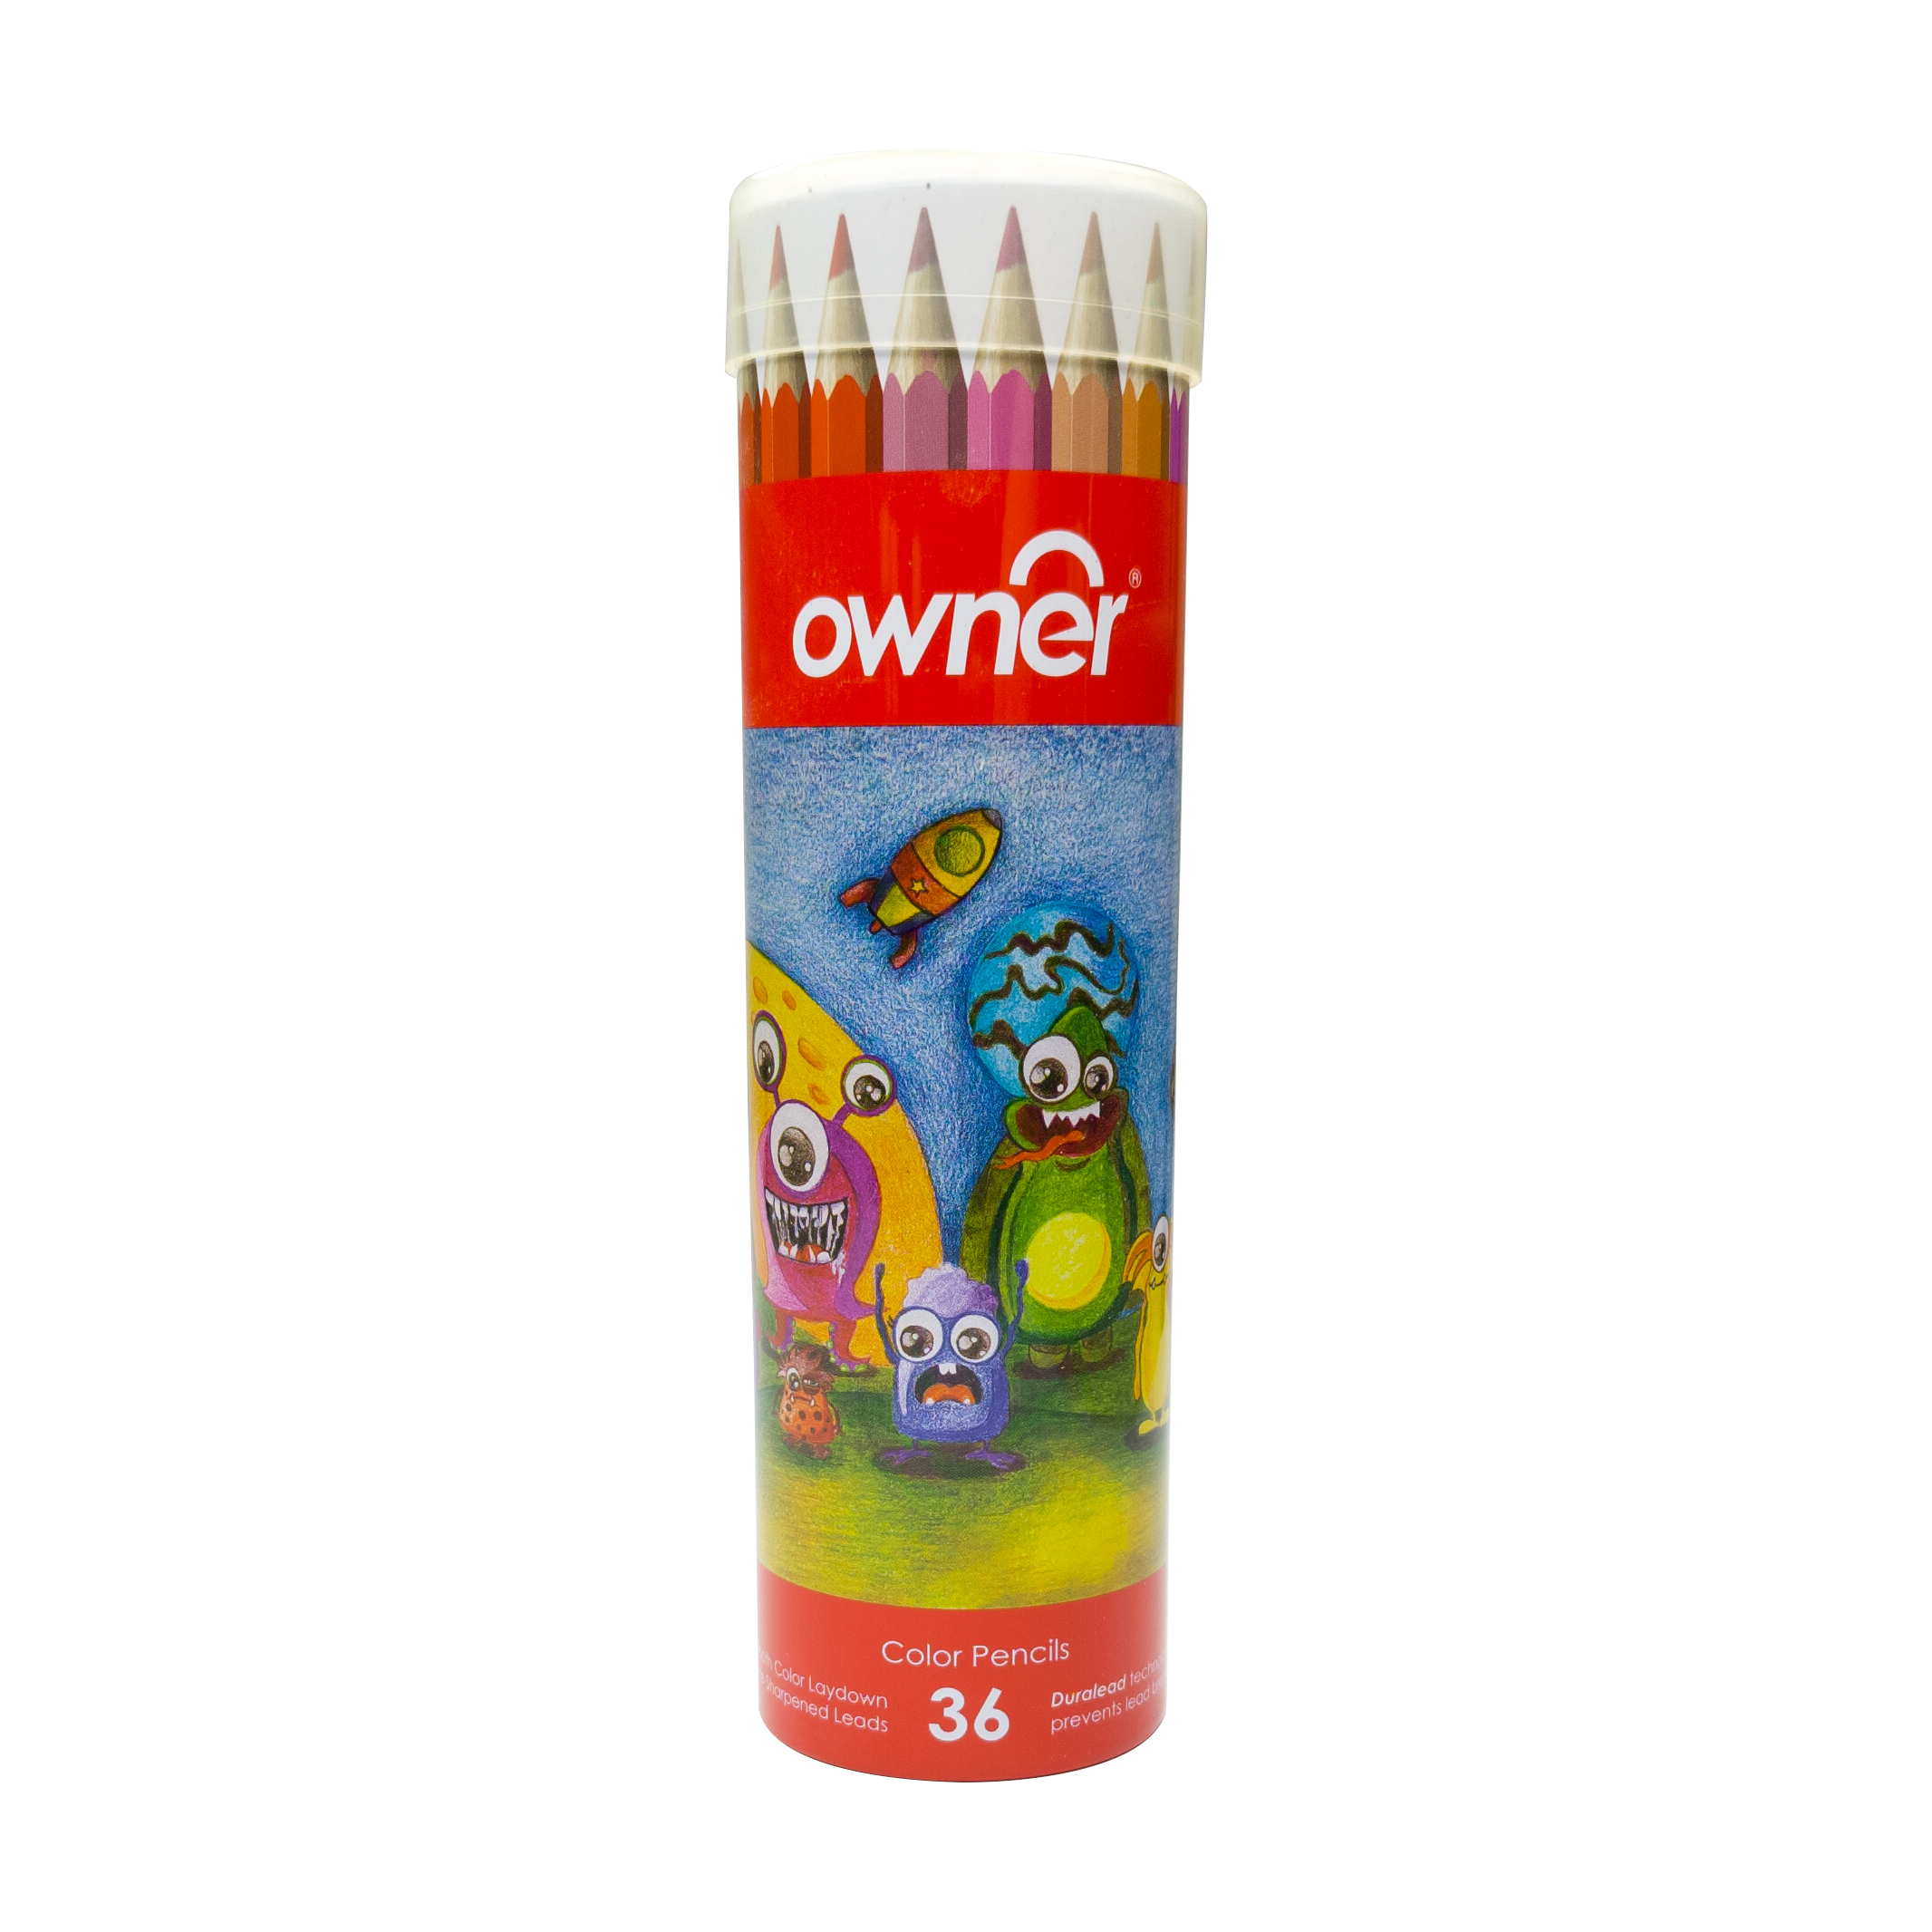  مداد رنگی 36 رنگ اونر مدل استوانه ای طرح آدم فضایی